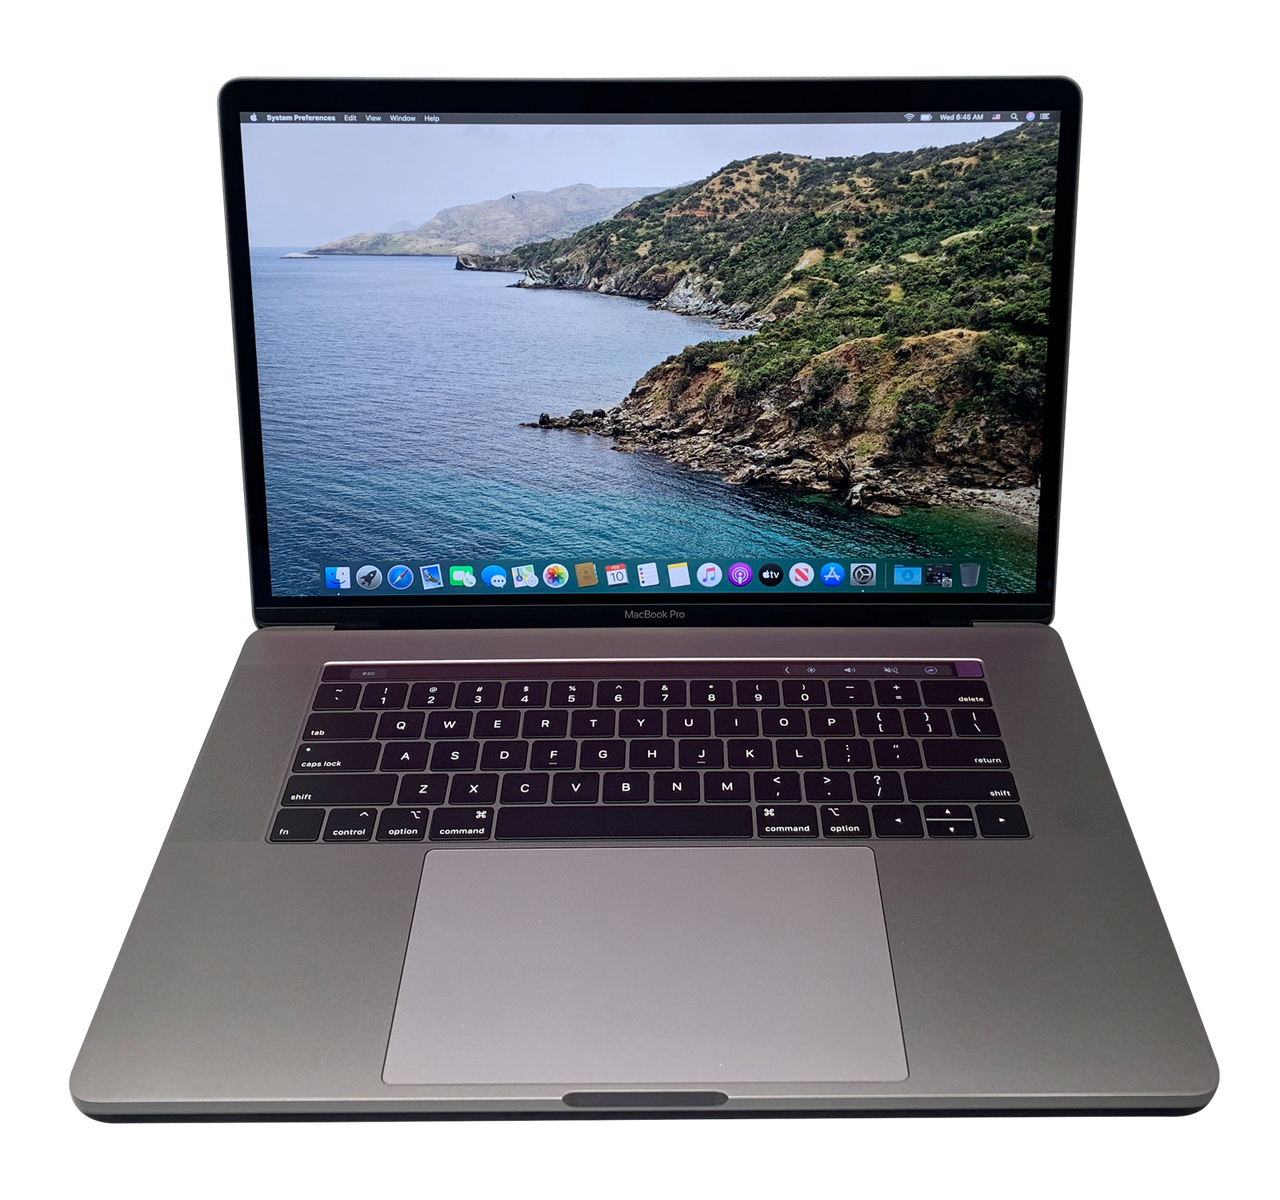 MacBookPro 15インチ Touch Bar搭載 USキーボードモデル